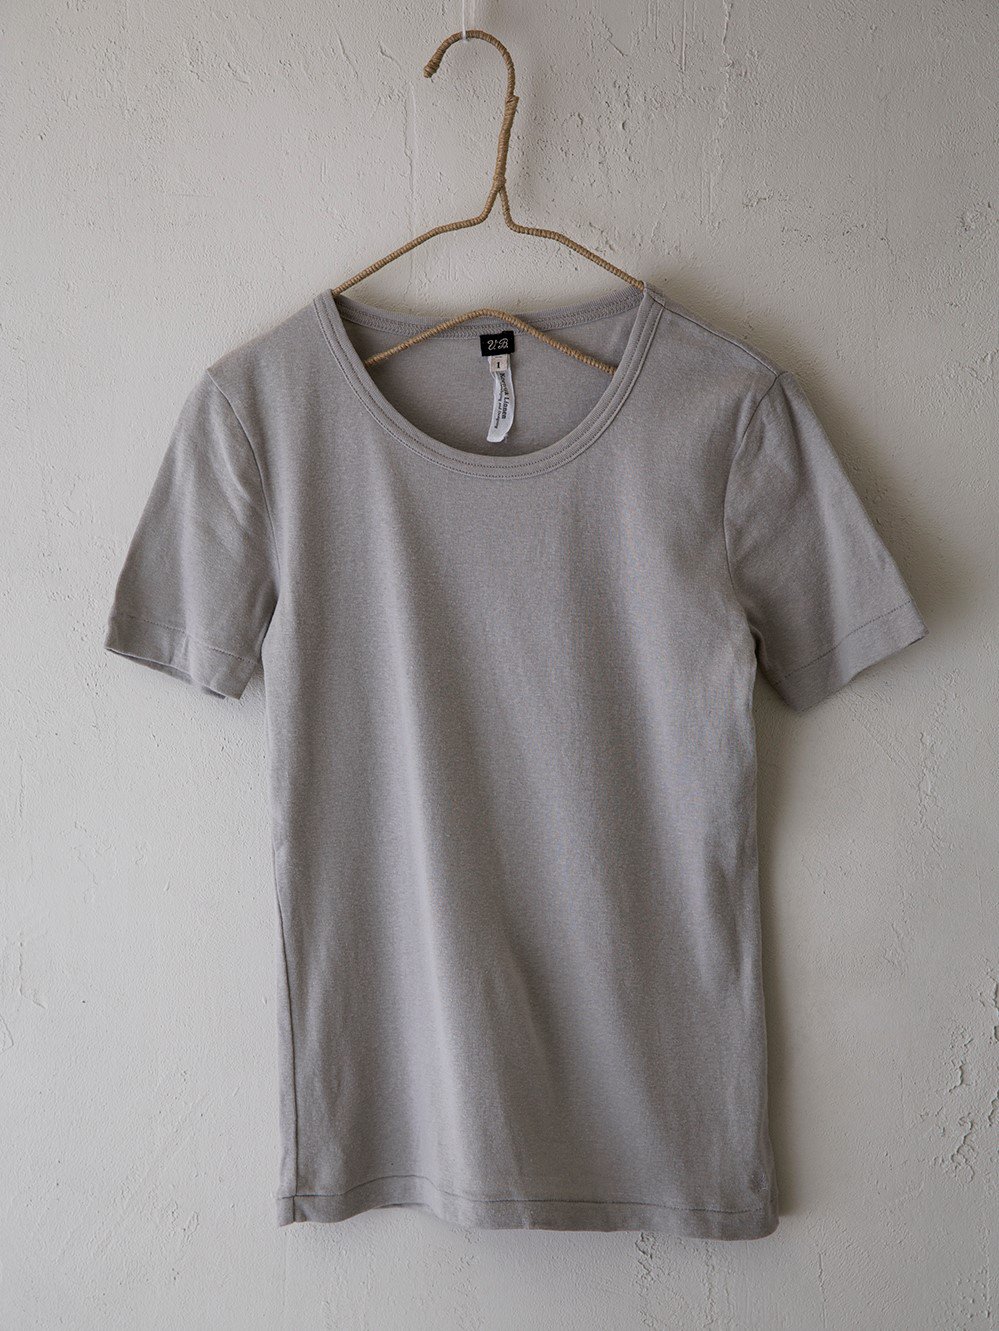 & 12 Linen（フライス）半袖Tシャツ